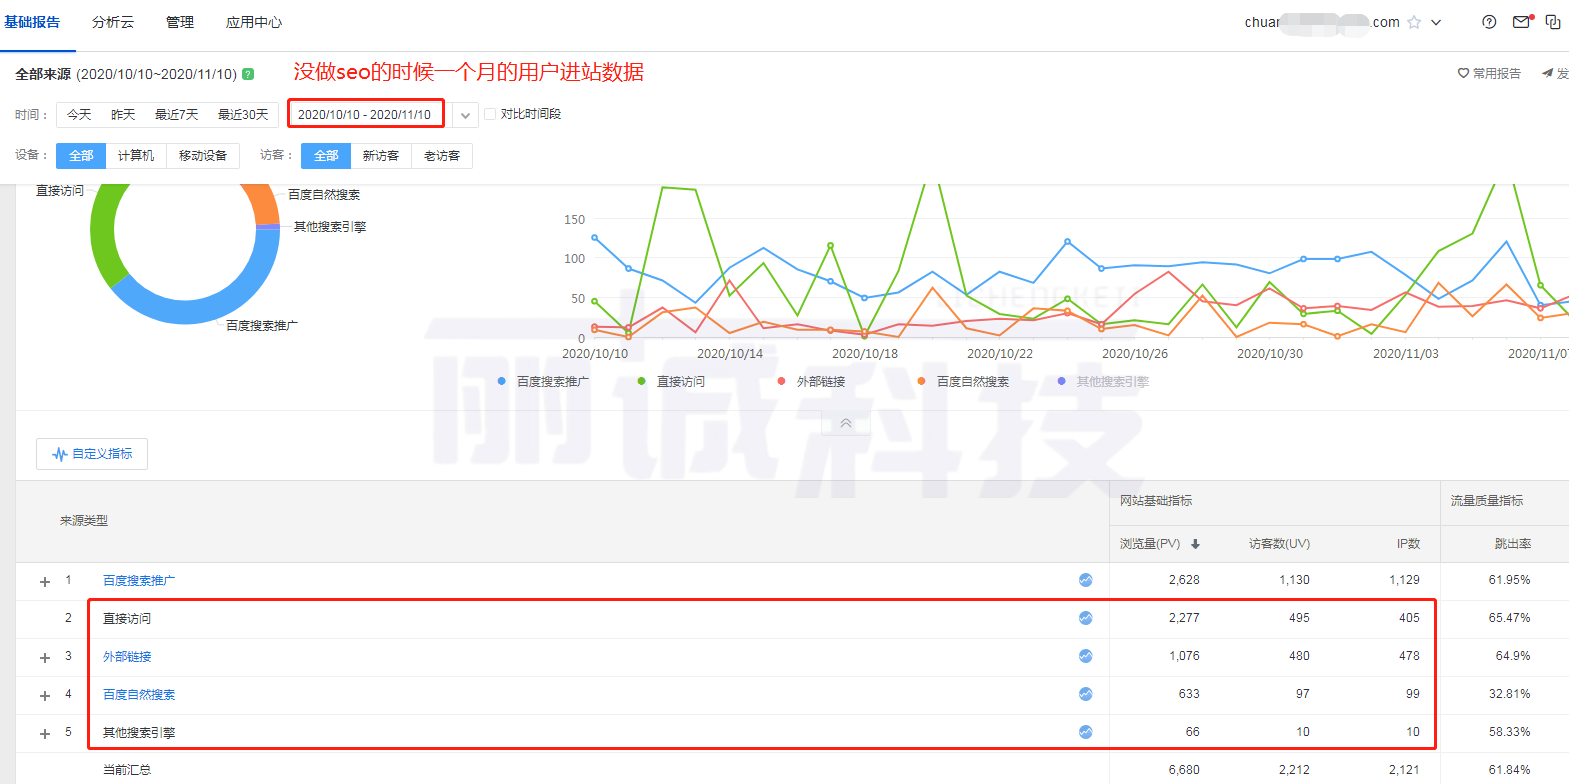 广州吸音板隔音板生产厂家上排名案例(图2)